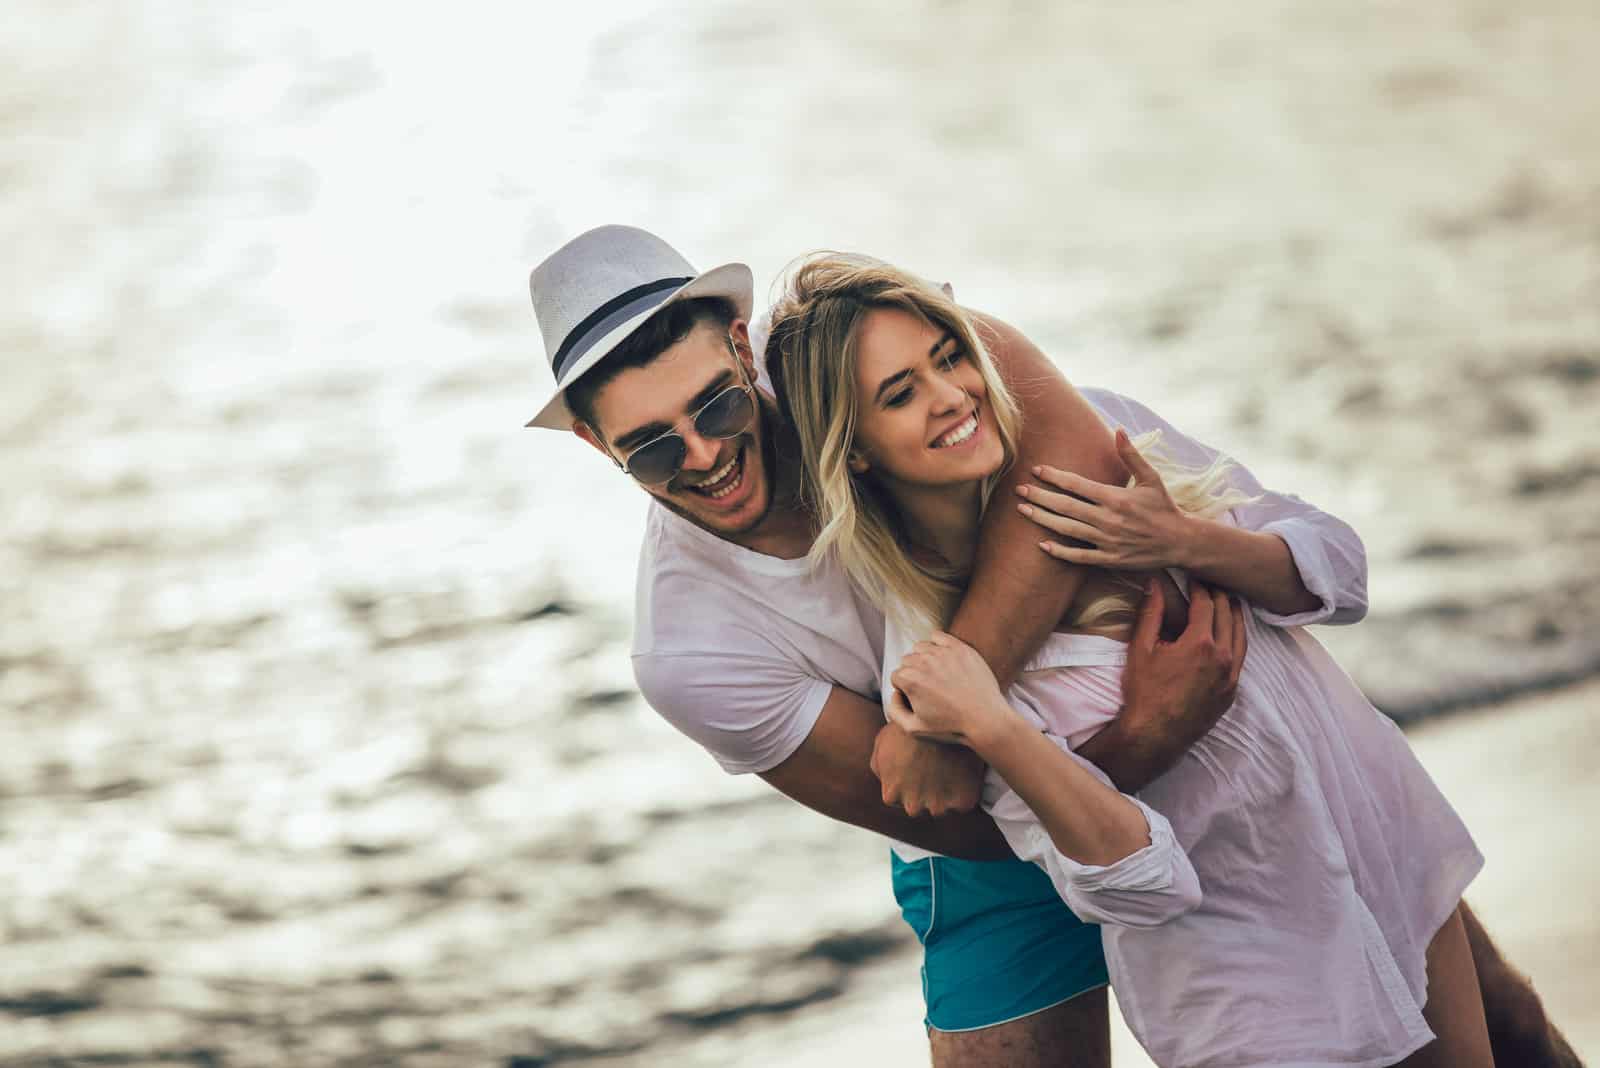 un uomo sorridente con un cappello in testa abbraccia una donna sulla spiaggia e ride